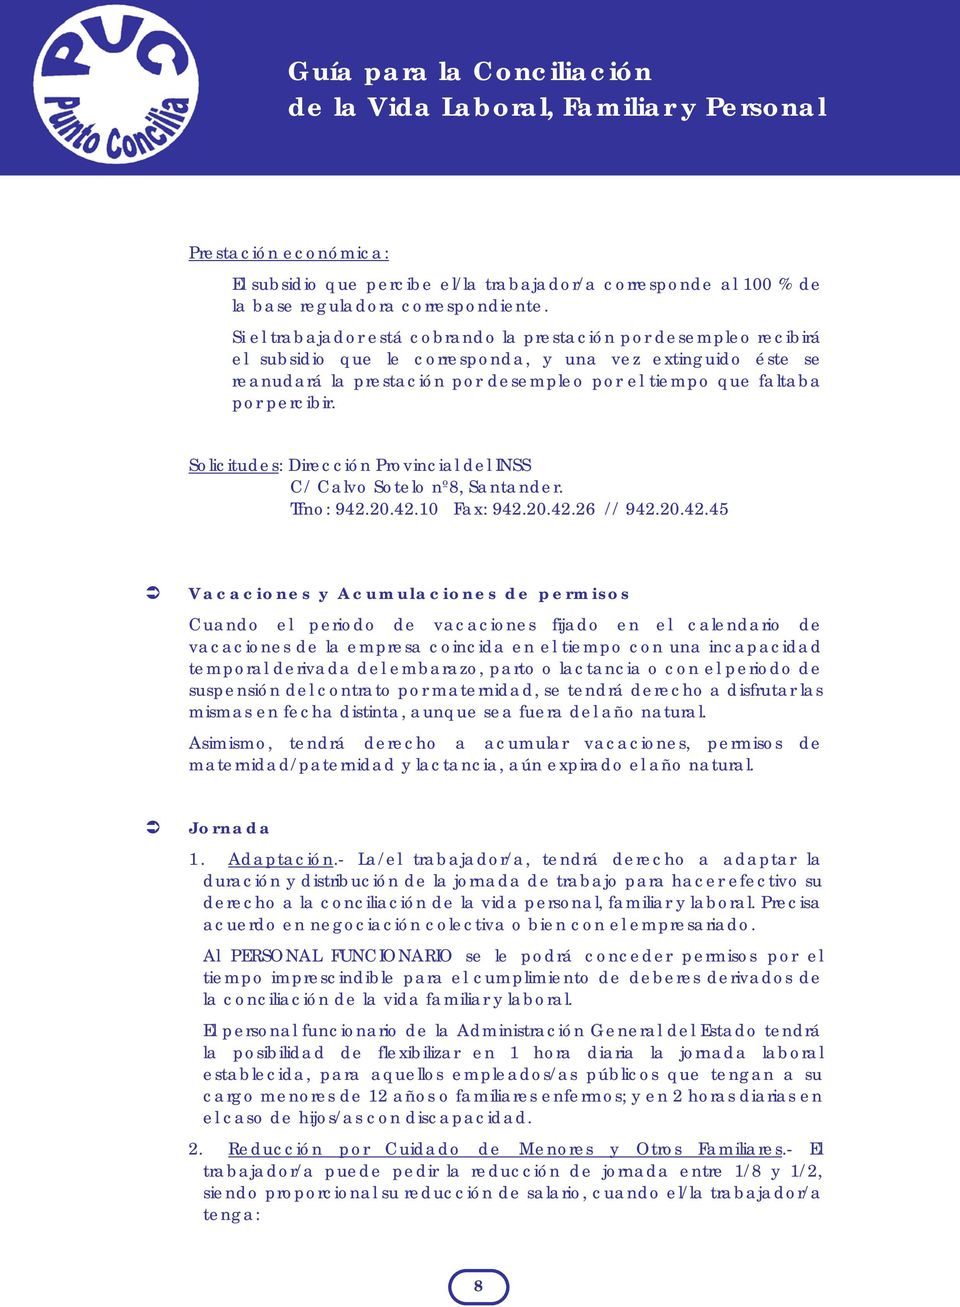 percibir. Solicitudes: Dirección Provincial del INSS C/ Calvo Sotelo nº8, Santander. Tfno: 942.